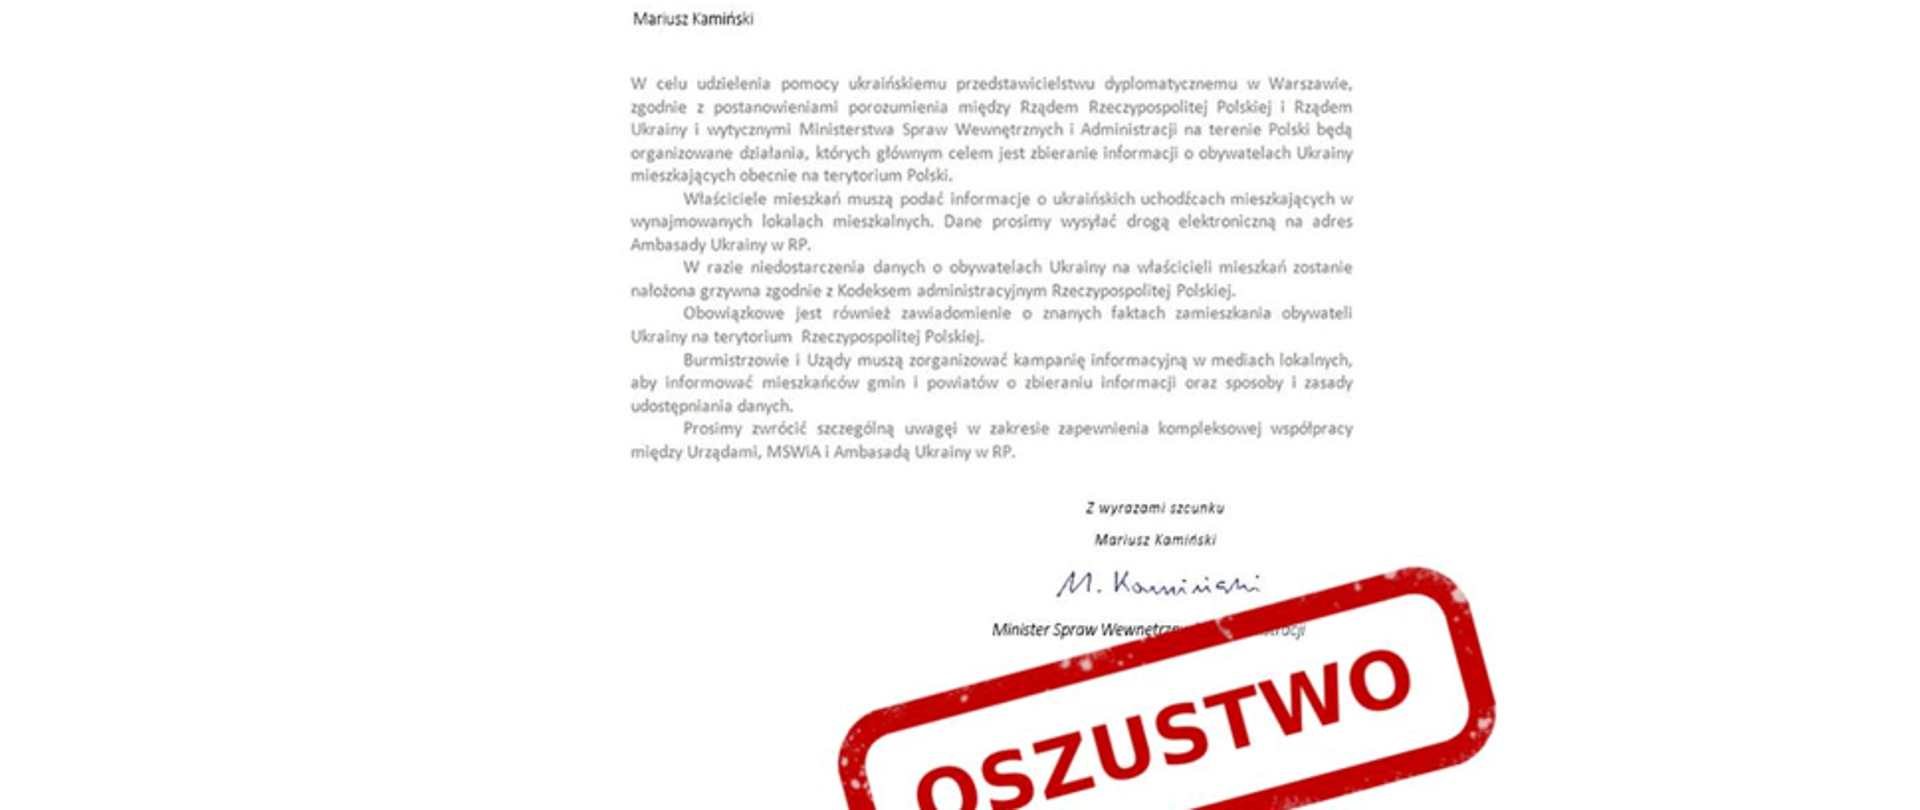 zdjęcie fałszywej wiadomości e-mail rzekomo od ministra Mariusza Kamińskiego z czerwonym napisem oszustwo